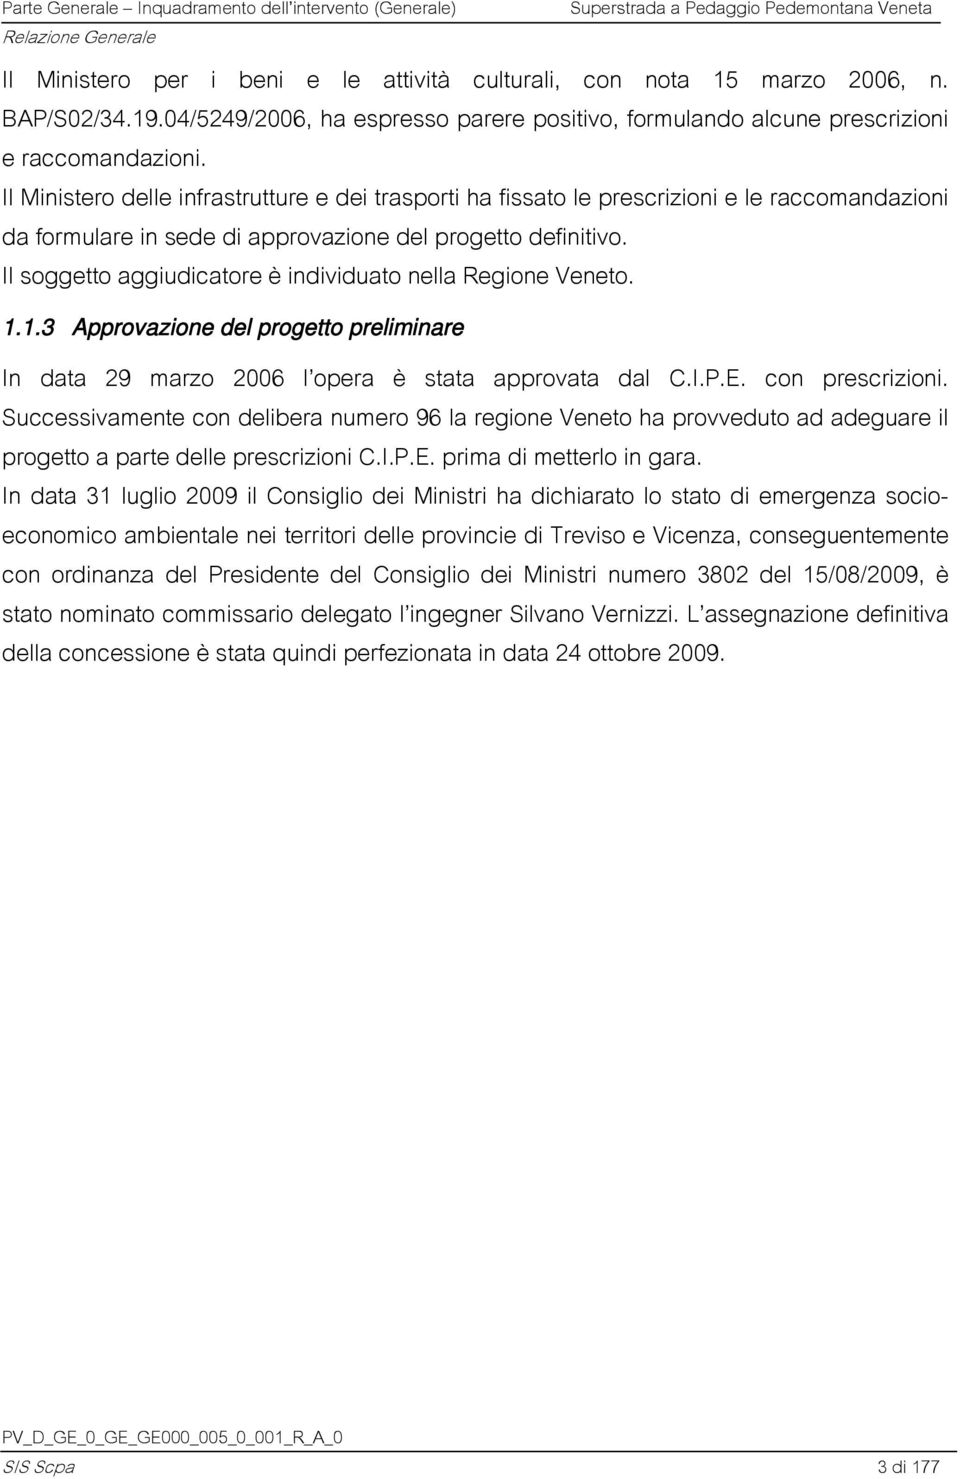 Il soggetto aggiudicatore è individuato nella Regione Veneto. 1.1.3 Approvazione del progetto preliminare In data 29 marzo 2006 l opera è stata approvata dal C.I.P.E. con prescrizioni.